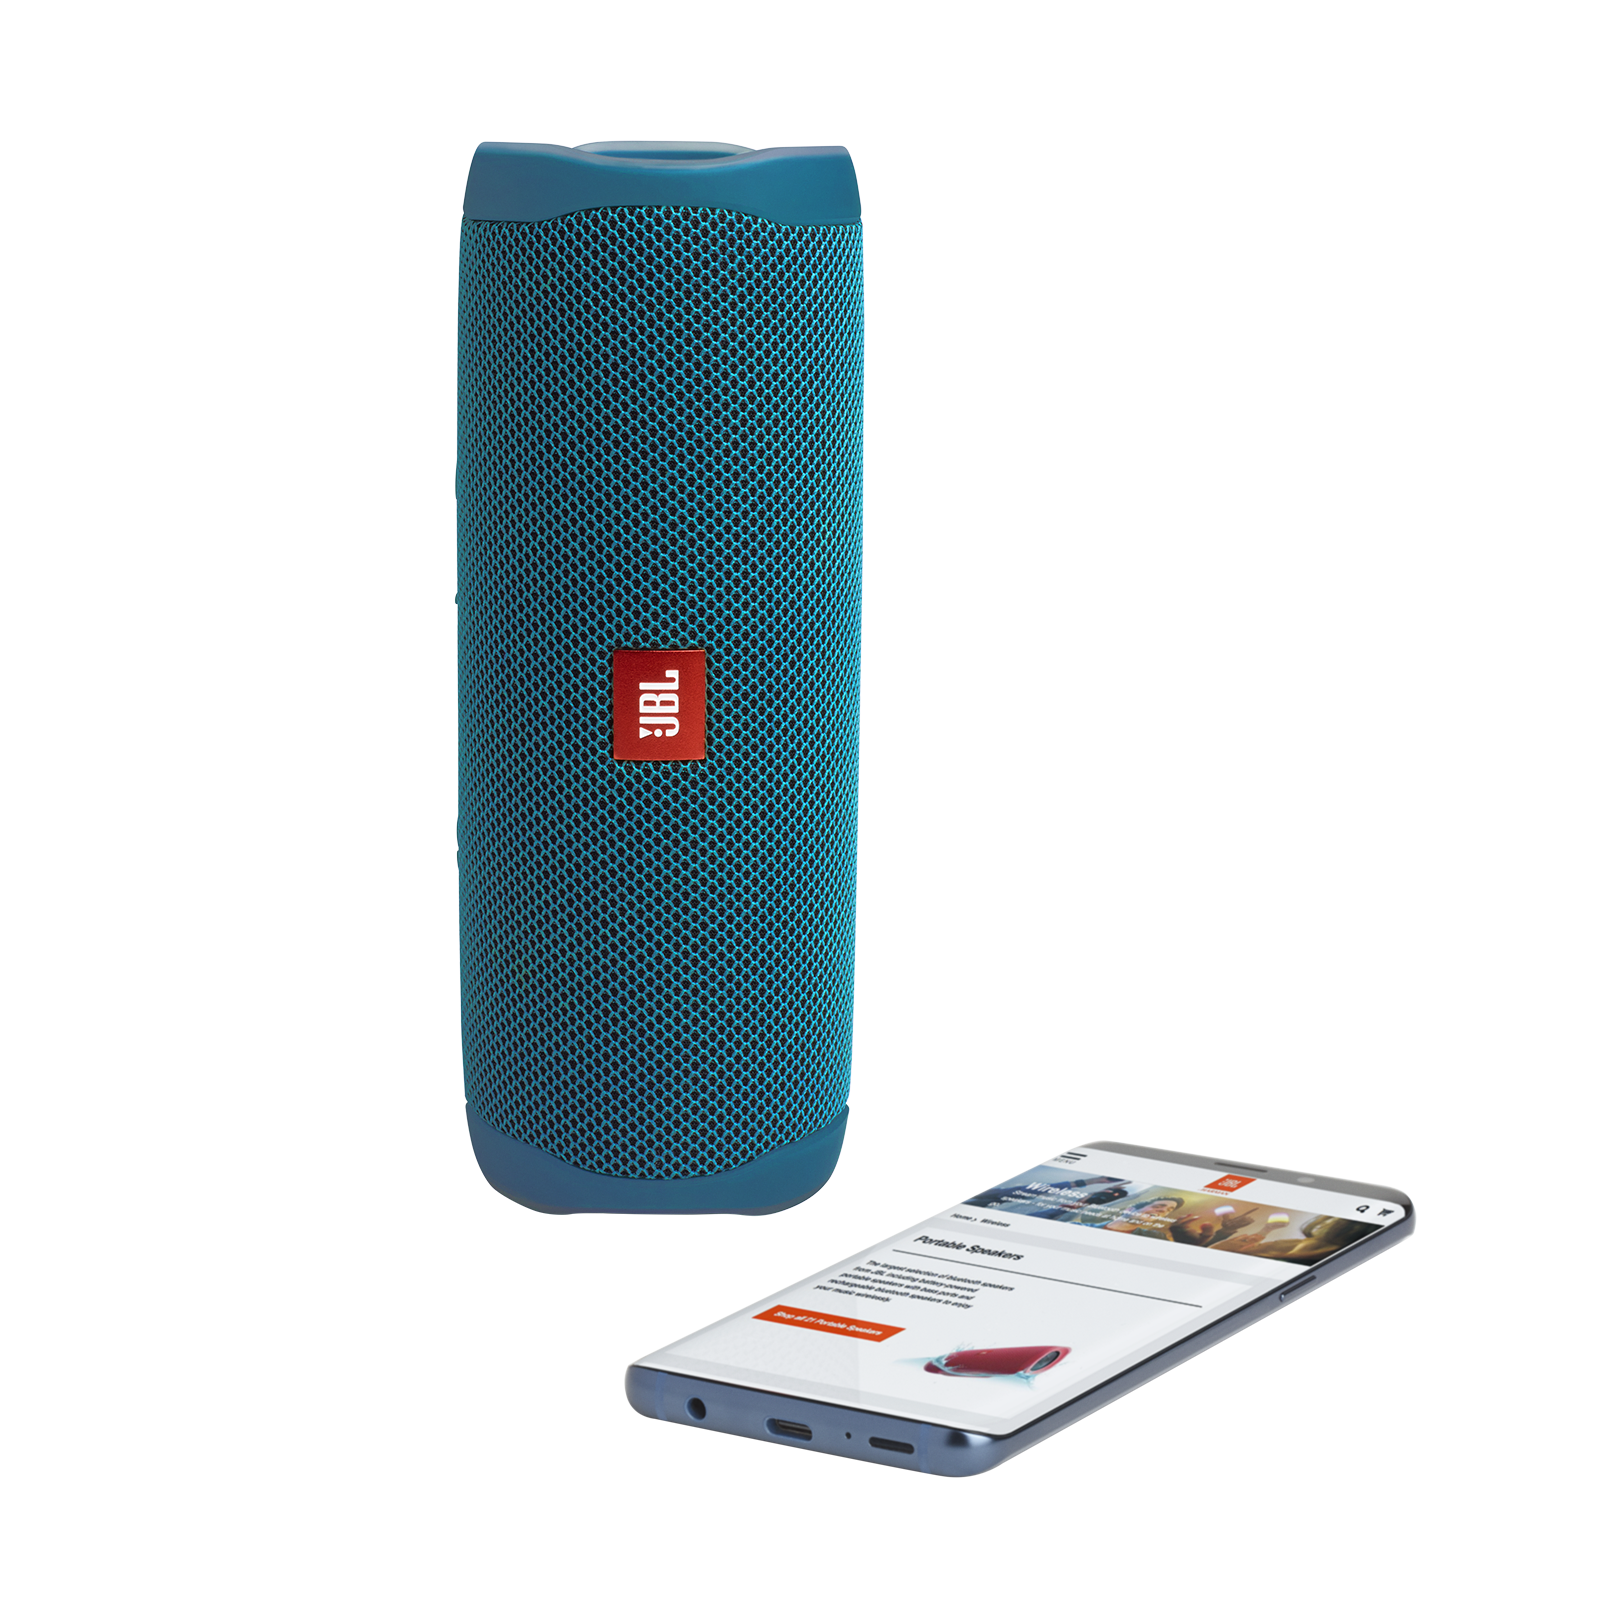 Couleur : Bleu océan JBL Flip 5 Eco Son signature JBL Composée à 90% de plastique recyclé Étanchéité IPX7 pour piscine et plage Enceinte Bluetooth portable 